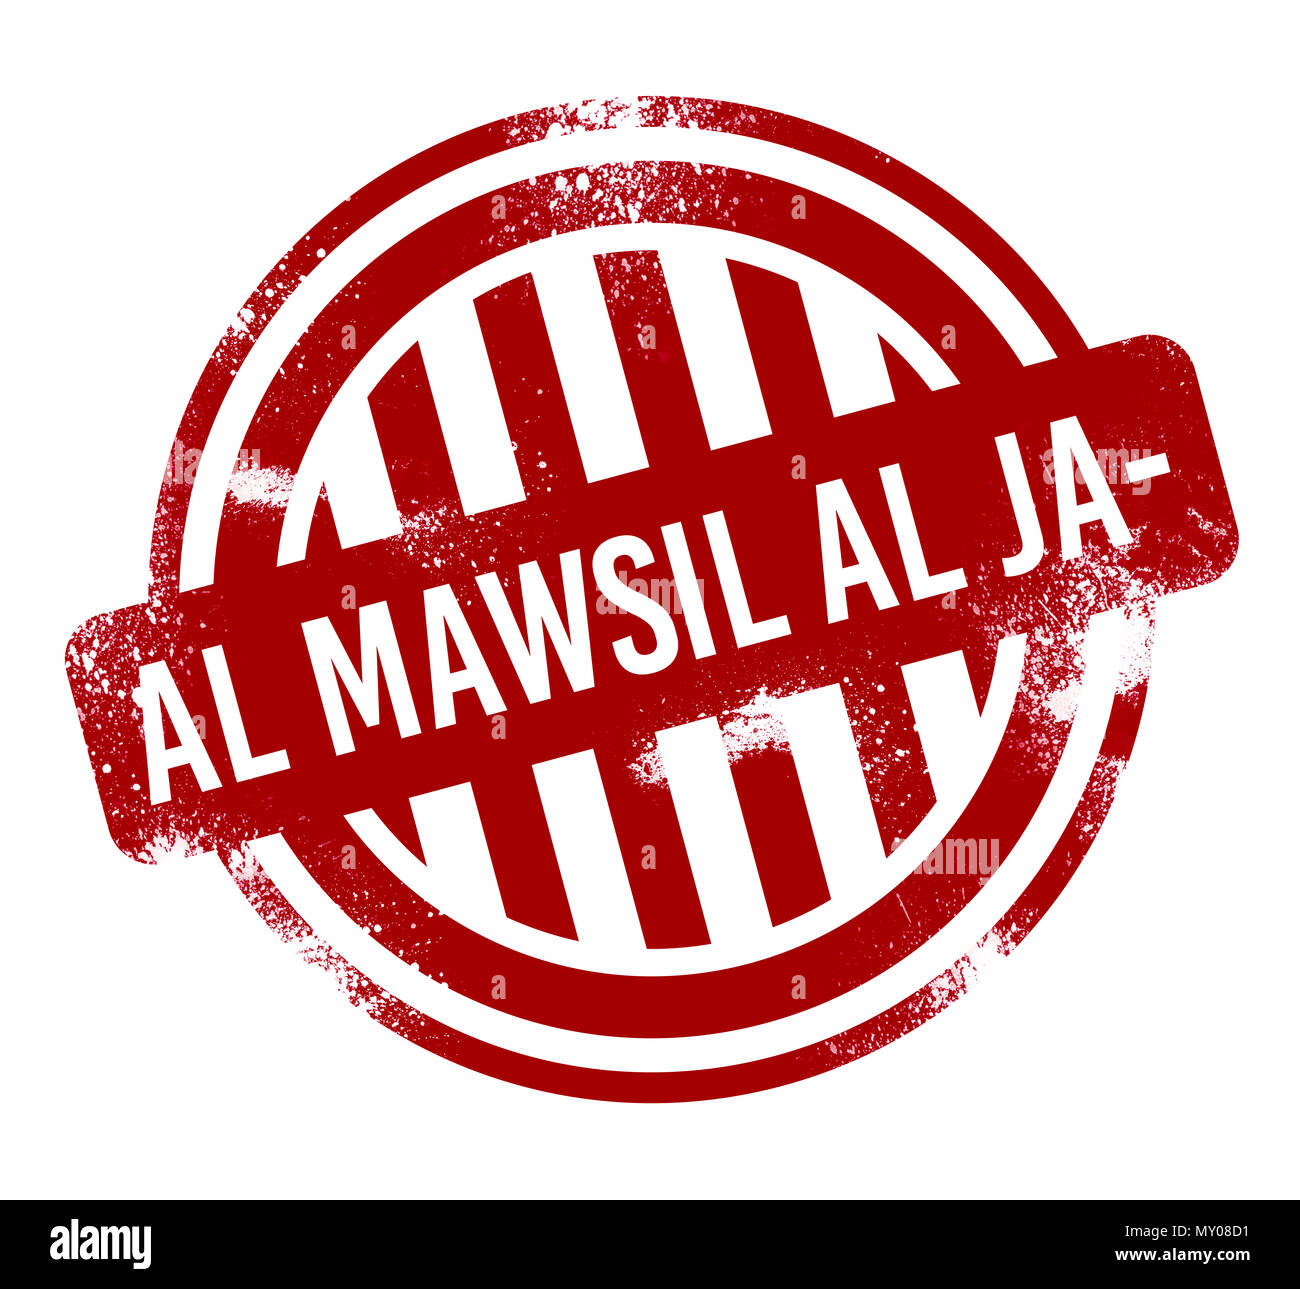 Nutten Al Mawsil Al Jadidah